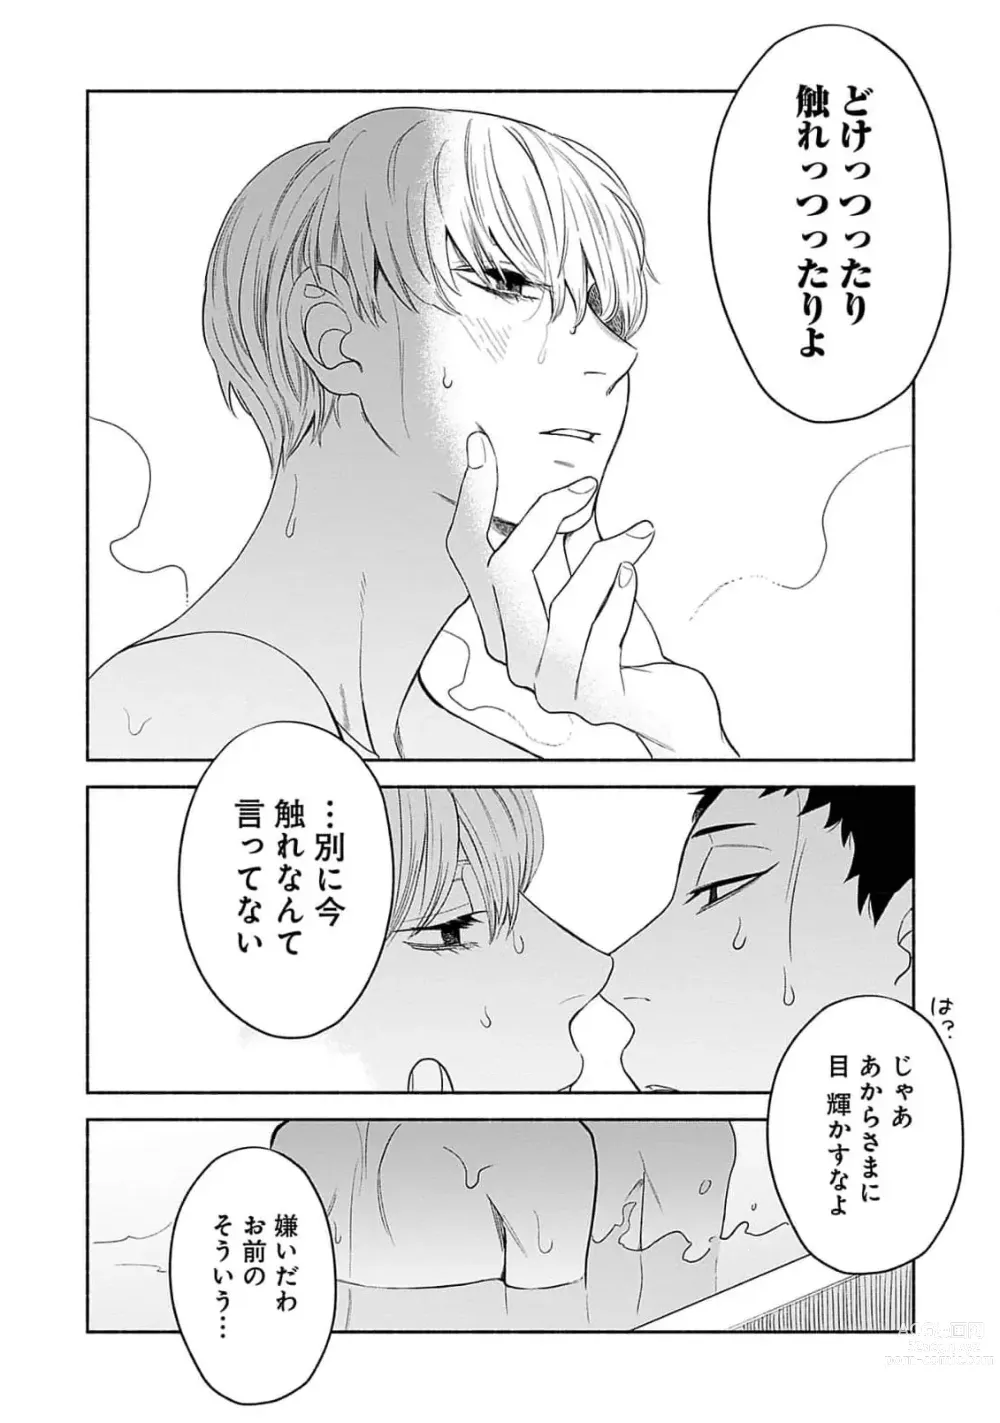 Page 188 of manga Yoru no Kyoudai